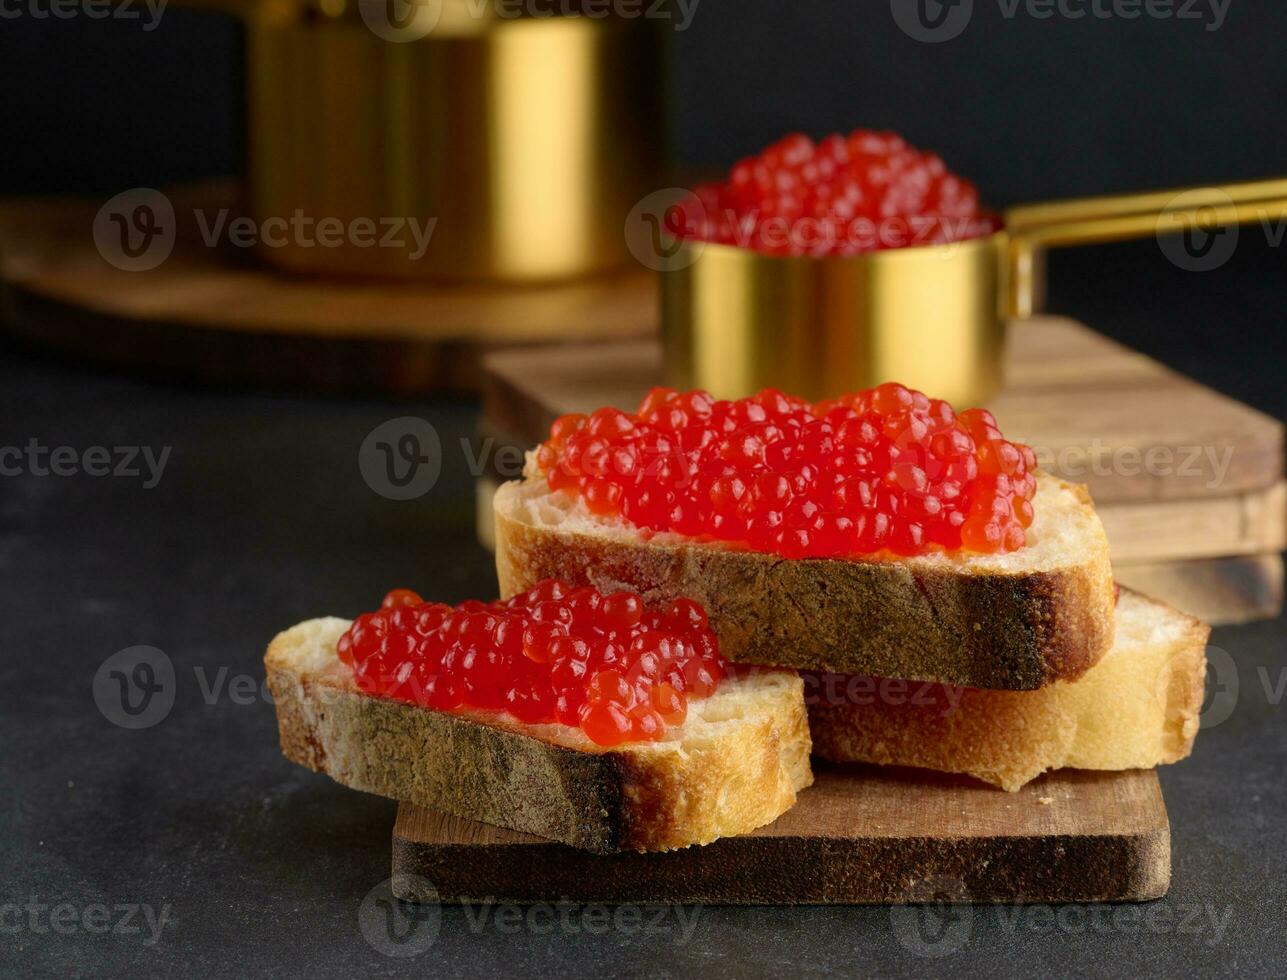 rot Kaviar auf Scheiben von Weiß Weizen Brot auf ein schwarz Tisch, Konzept von Luxus und Gourmet Küche foto